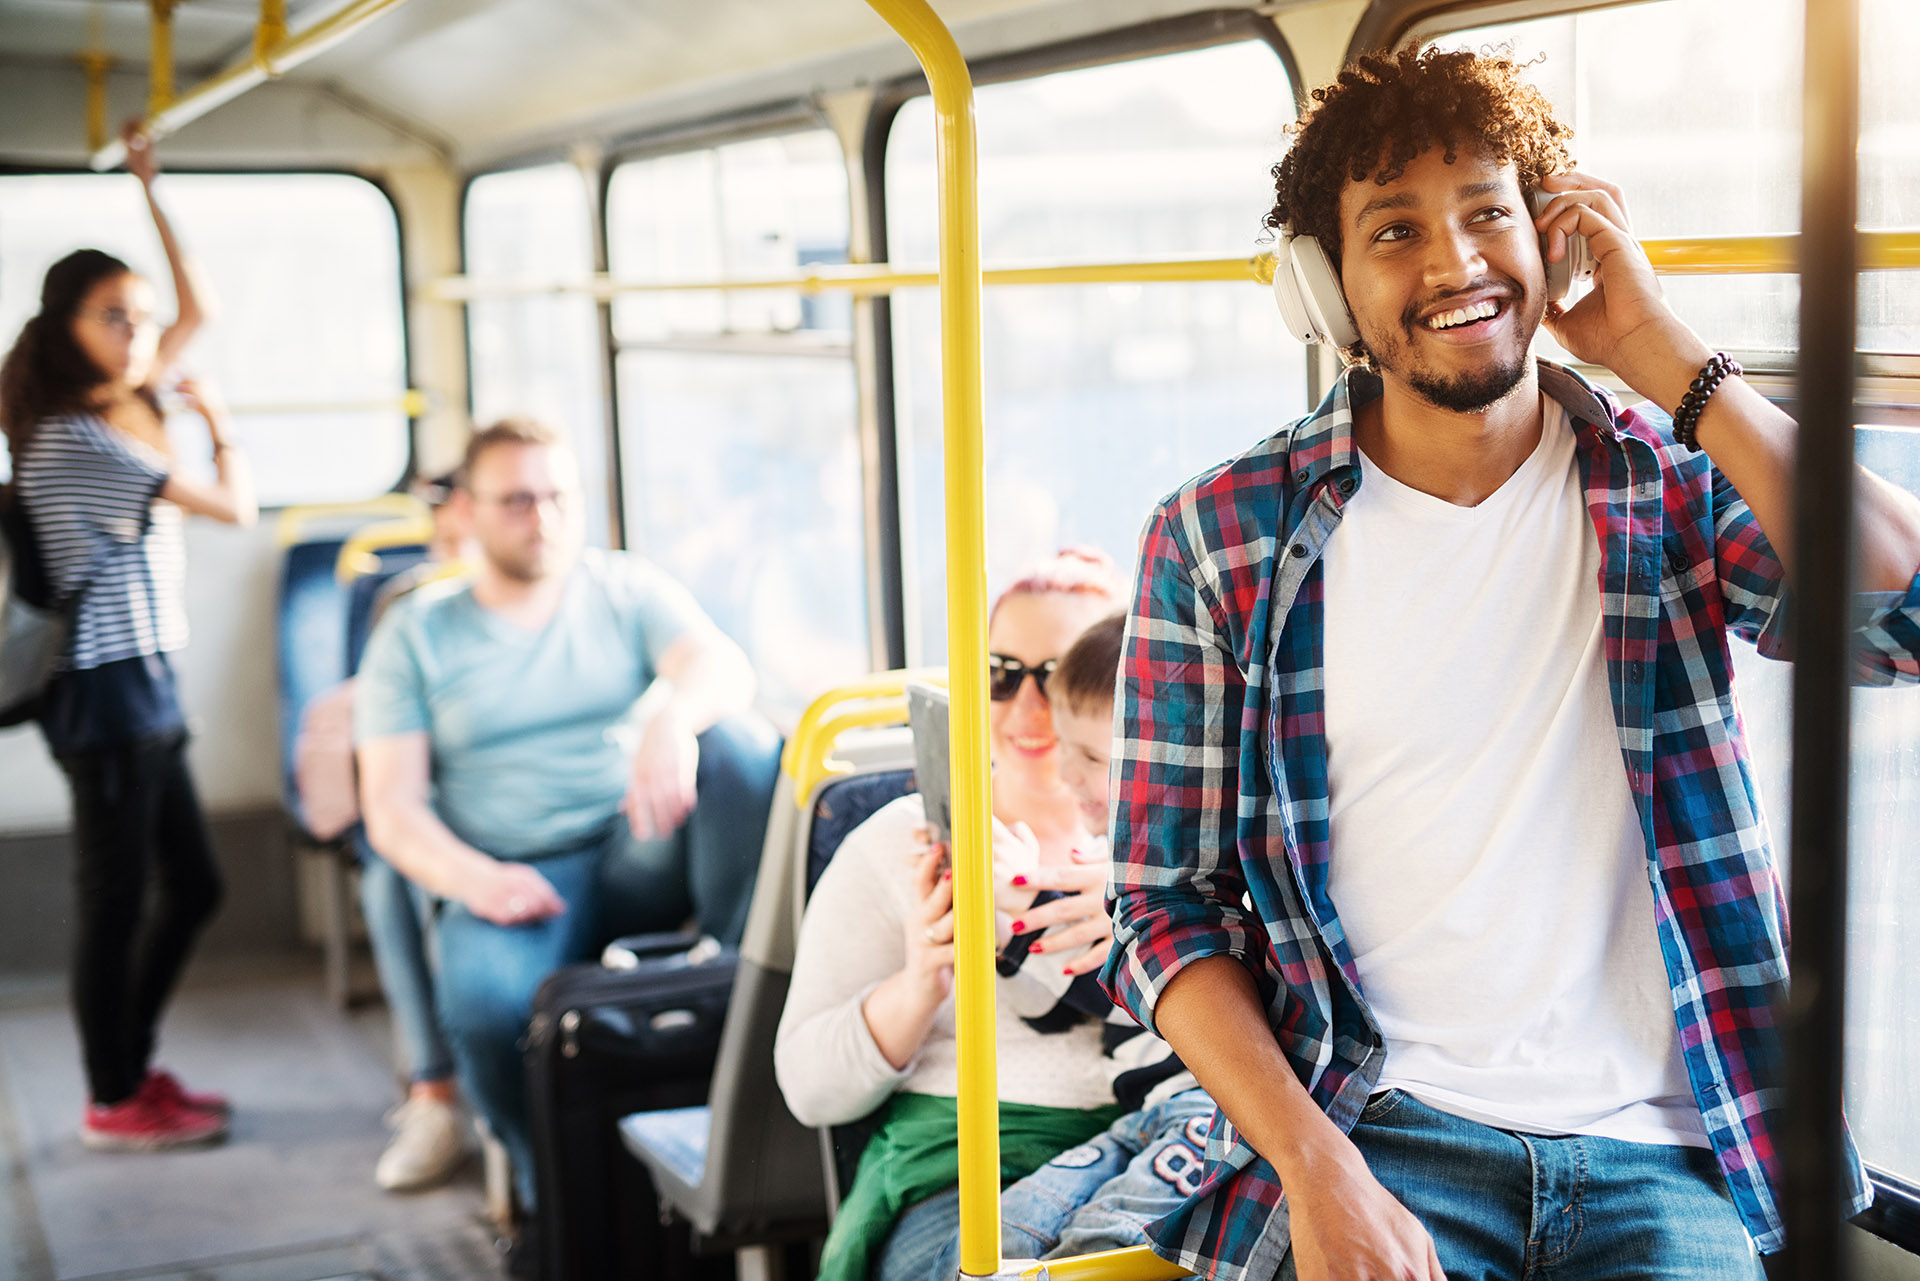 Автобус спортсмены. Автобус young. Молодой человек улыбается в автобусе путешествует. Фото людей путешествующих в доме автобусе. Спортсмены идут в автобус стоковые фото.